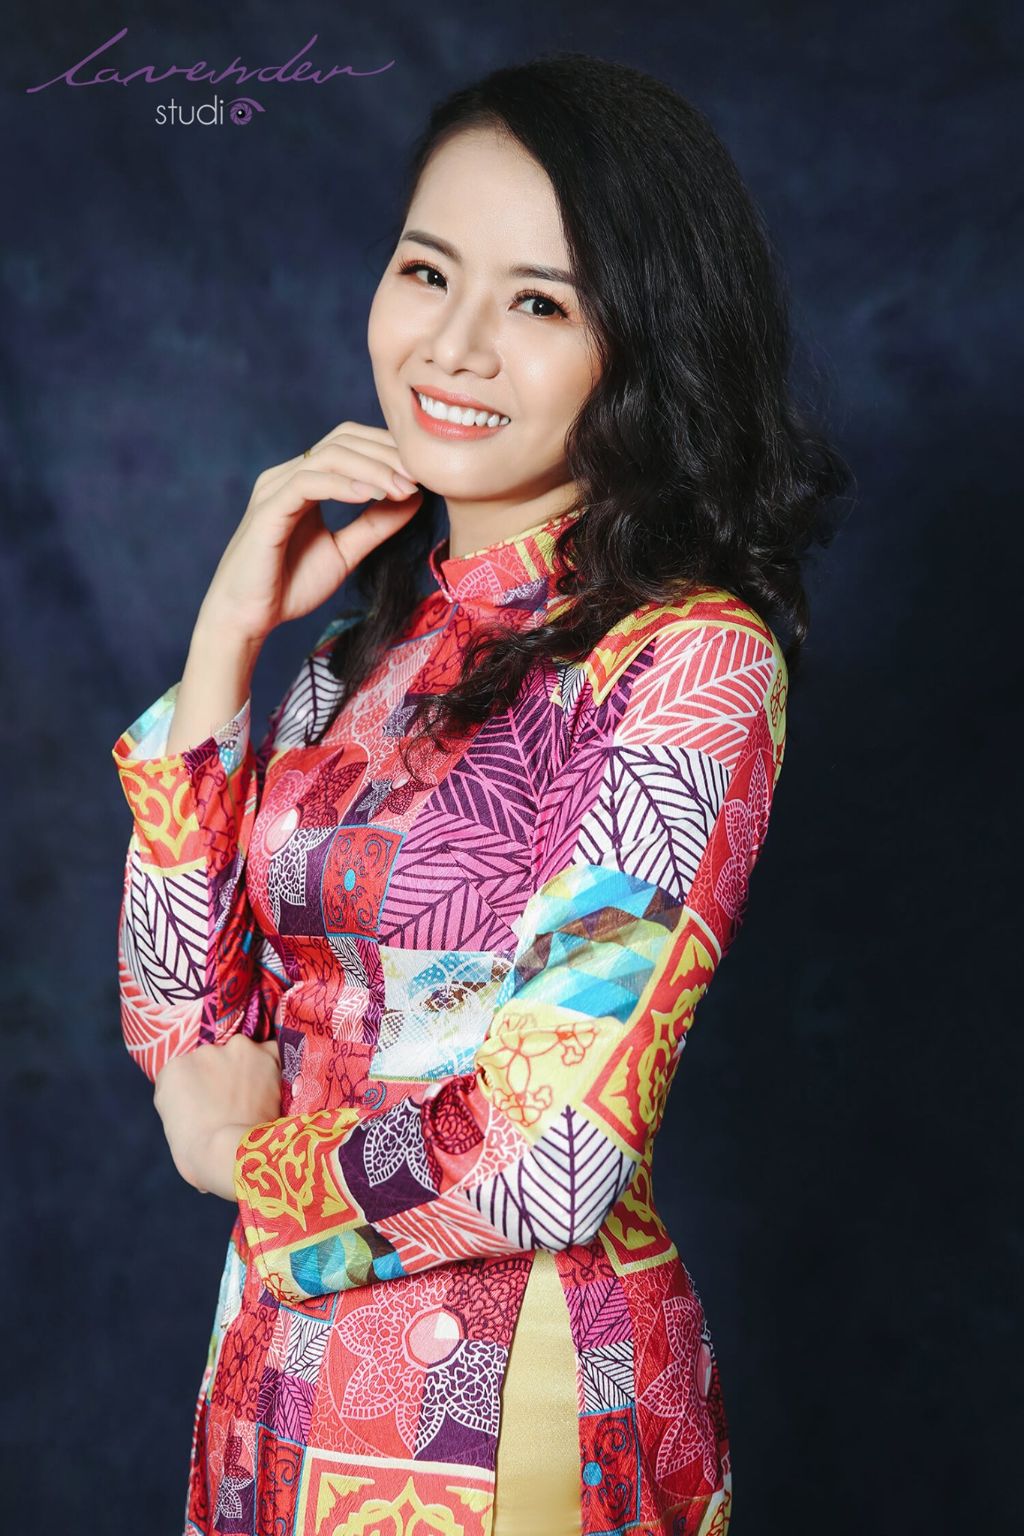 Studio chụp ảnh áo dài uy tín nhất Việt Nam - Lavender Studio